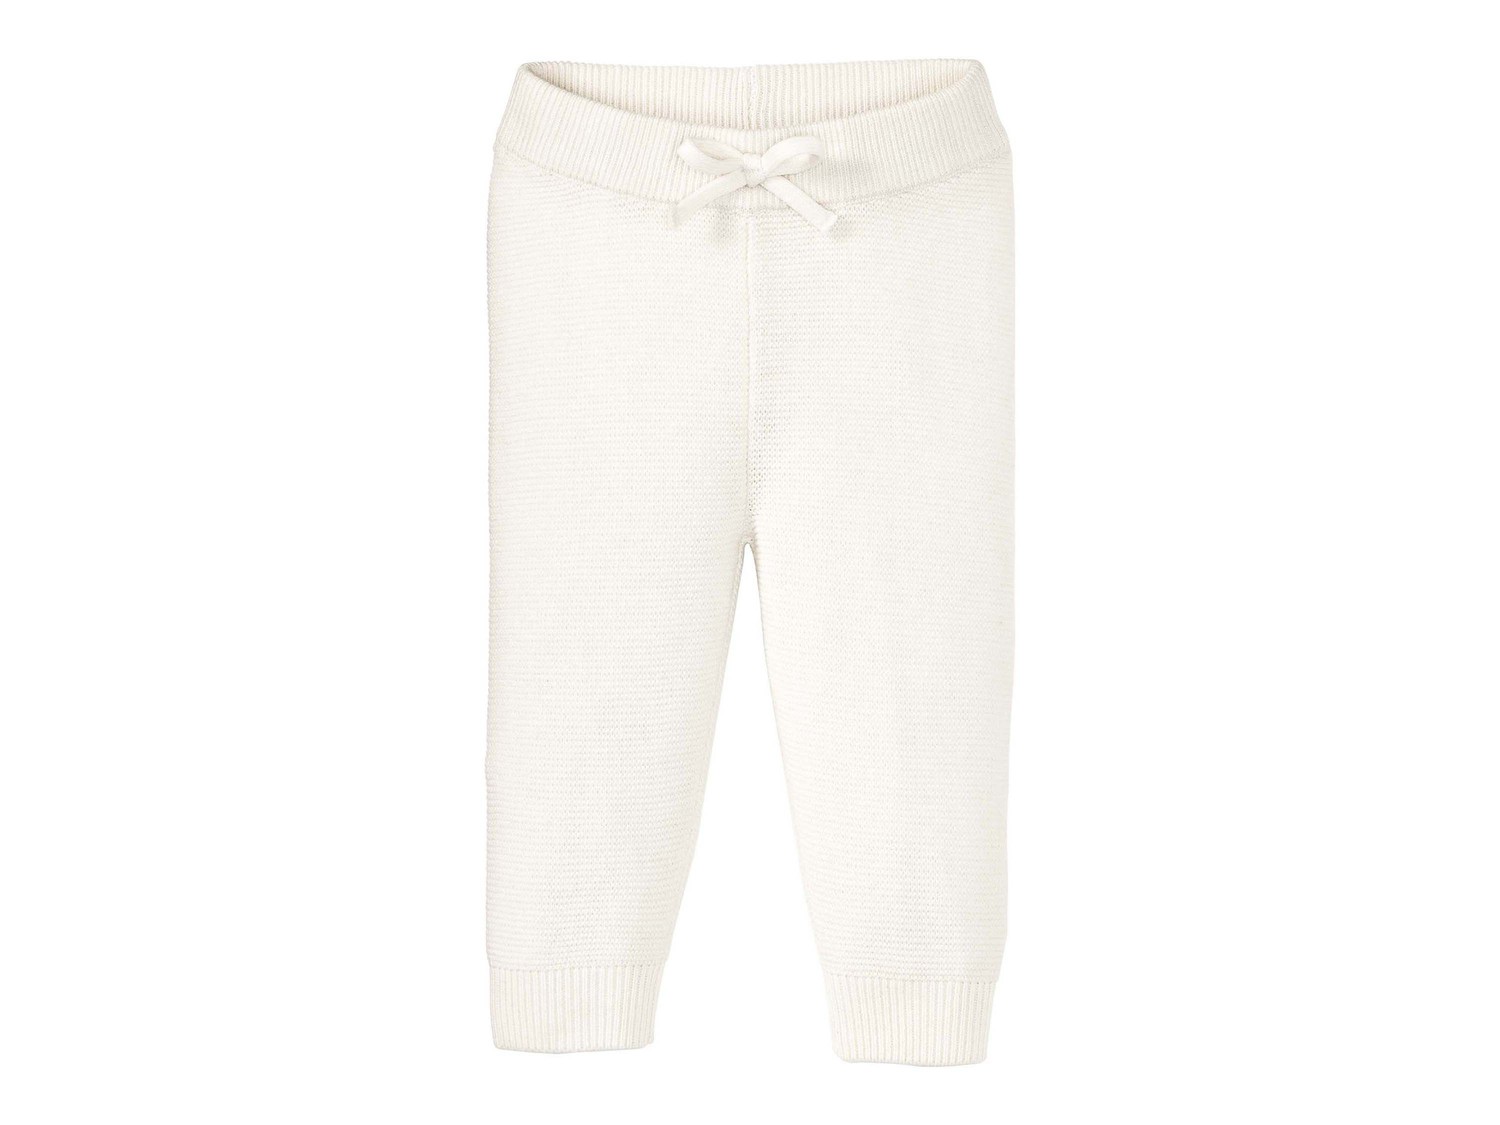 Pantaloni da neonati Lupilu, prezzo 5.99 &#8364;  
-  In puro cotone
- GOTS